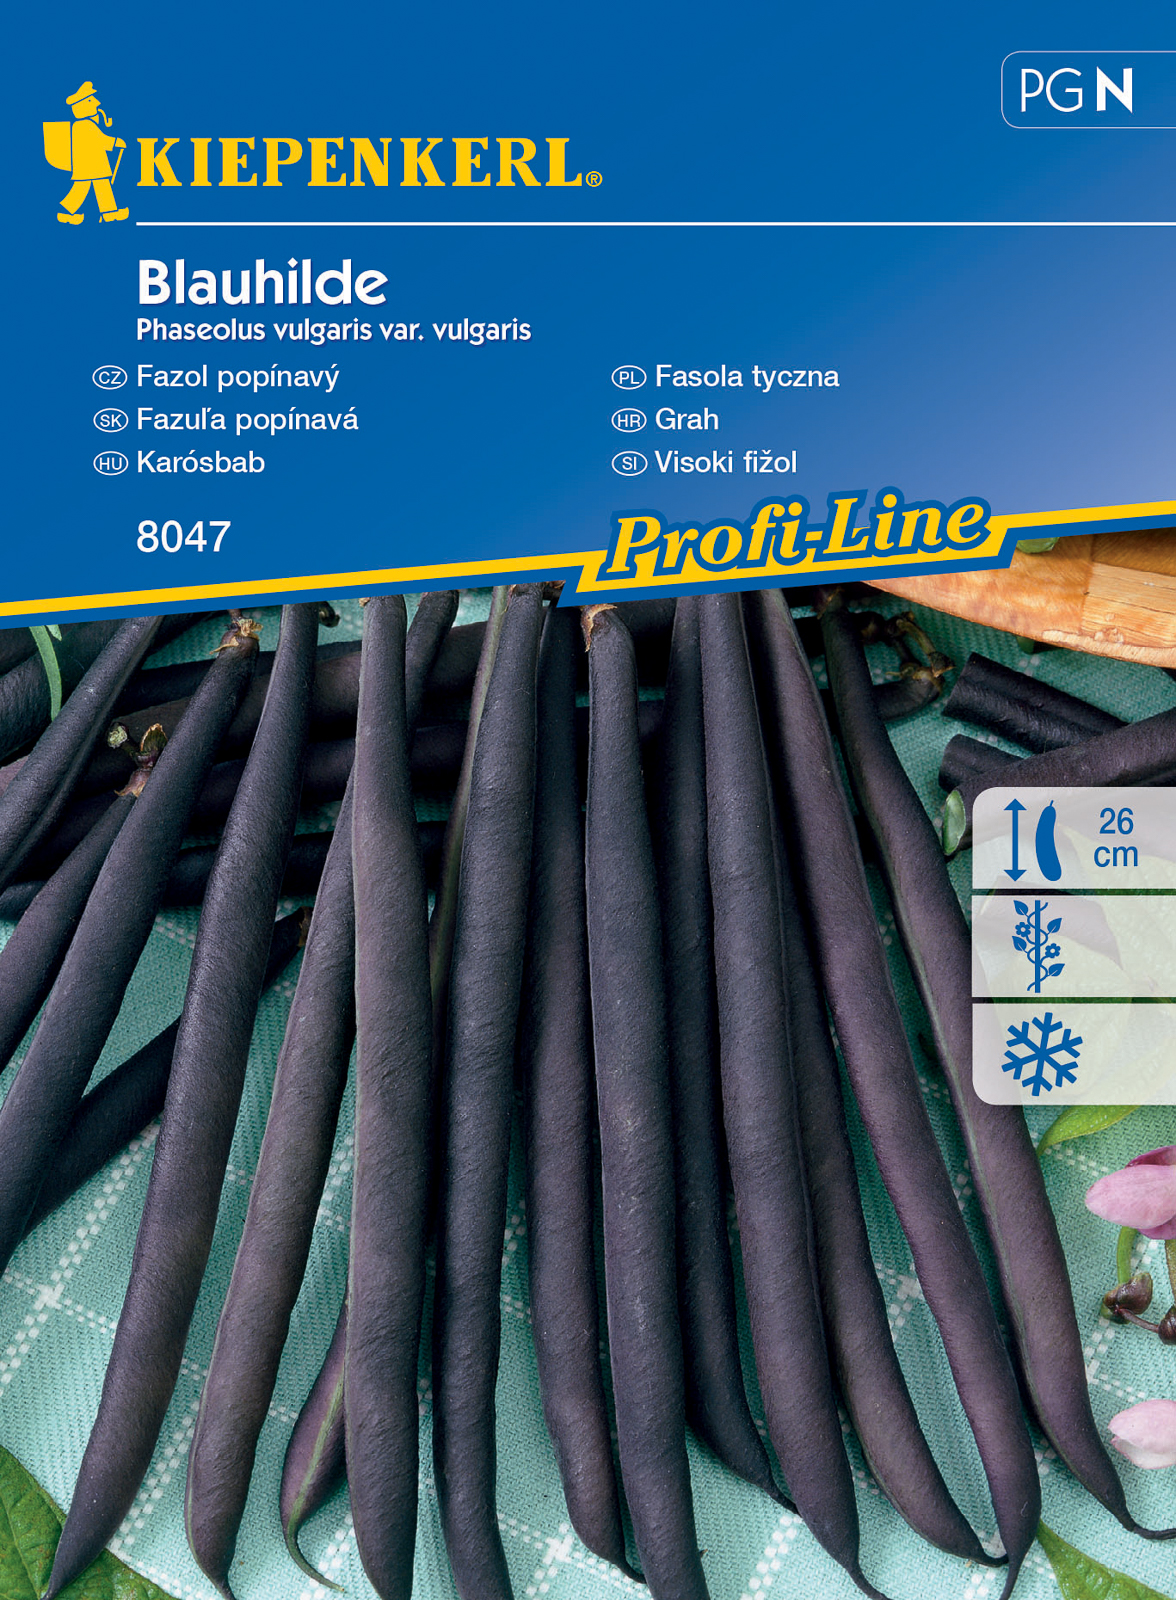 Broad beans Blauhilde for 6-8 stakes Kiepenkerl